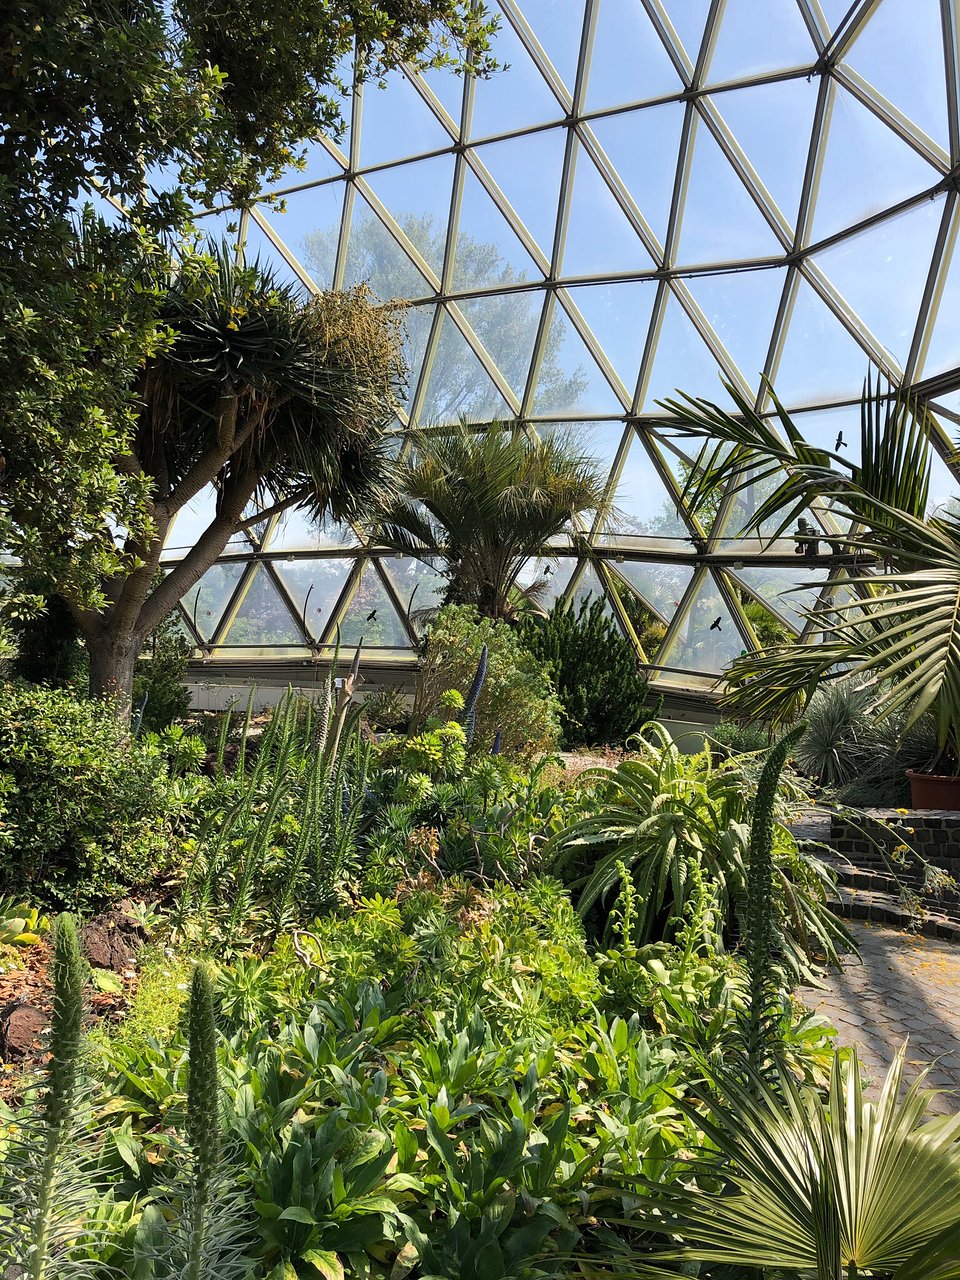 Botanischer Garten solingen Inspirierend Botanical Garden Dusseldorf 2020 All You Need to Know